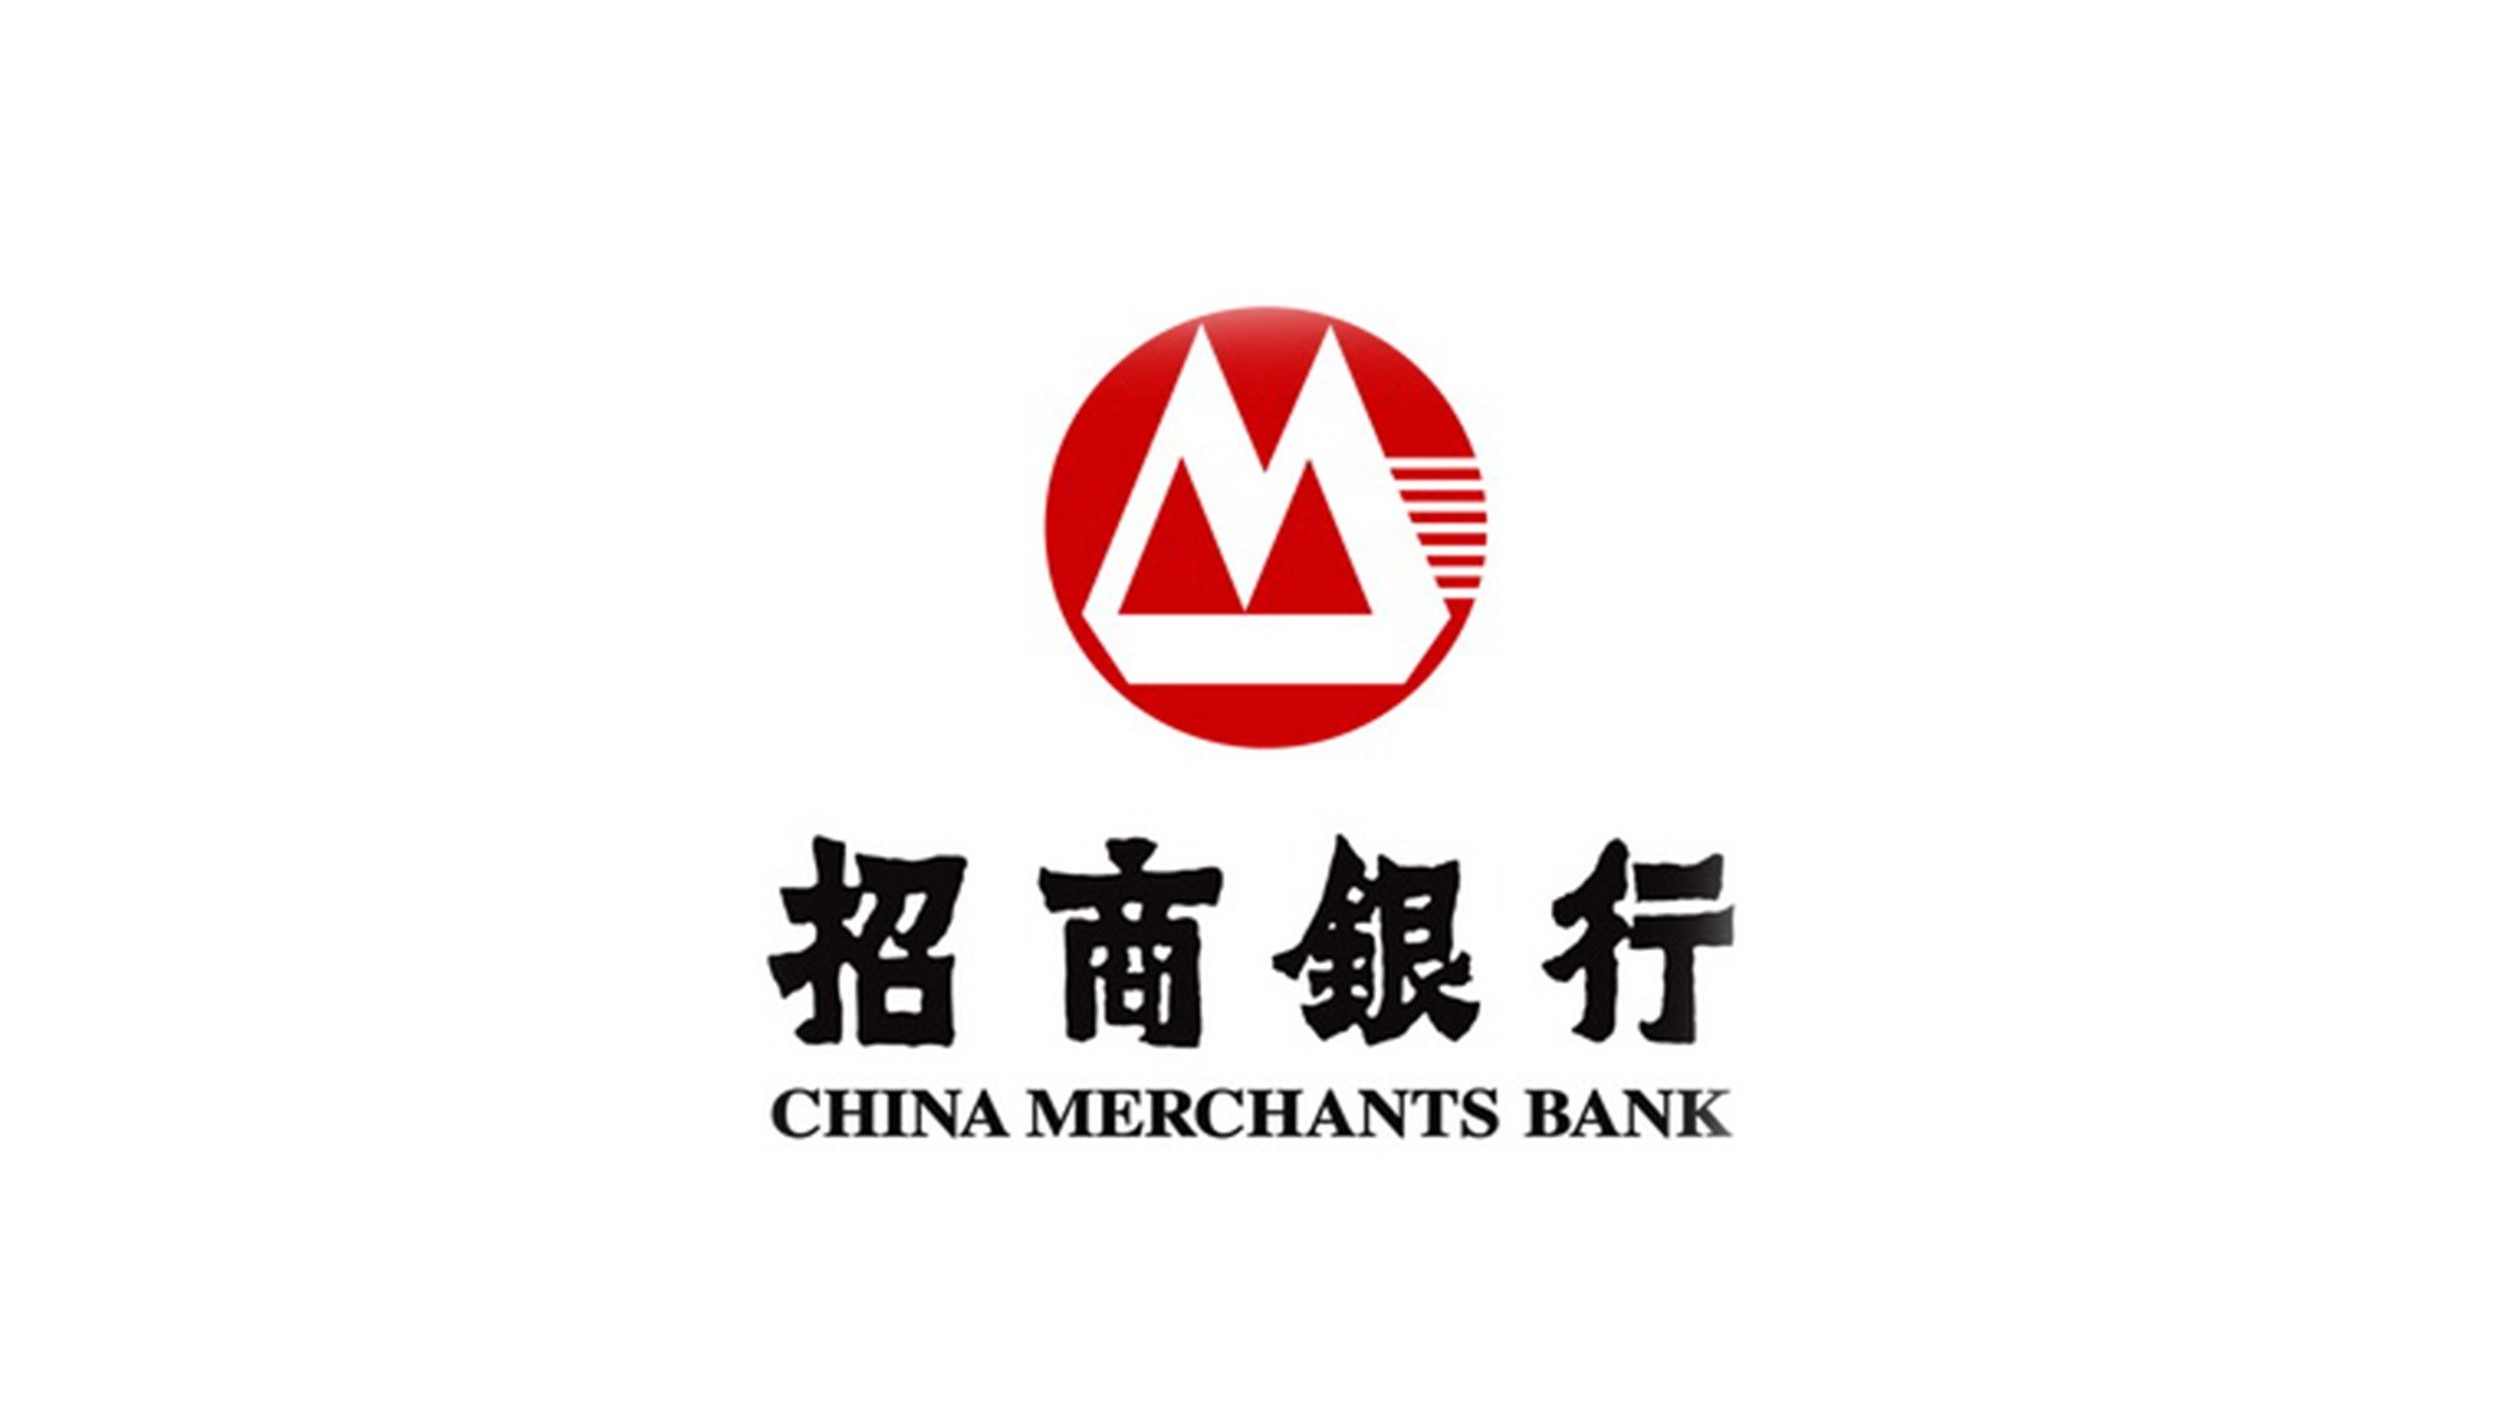 招商银行logo图片含义/演变/变迁及品牌介绍 - logo